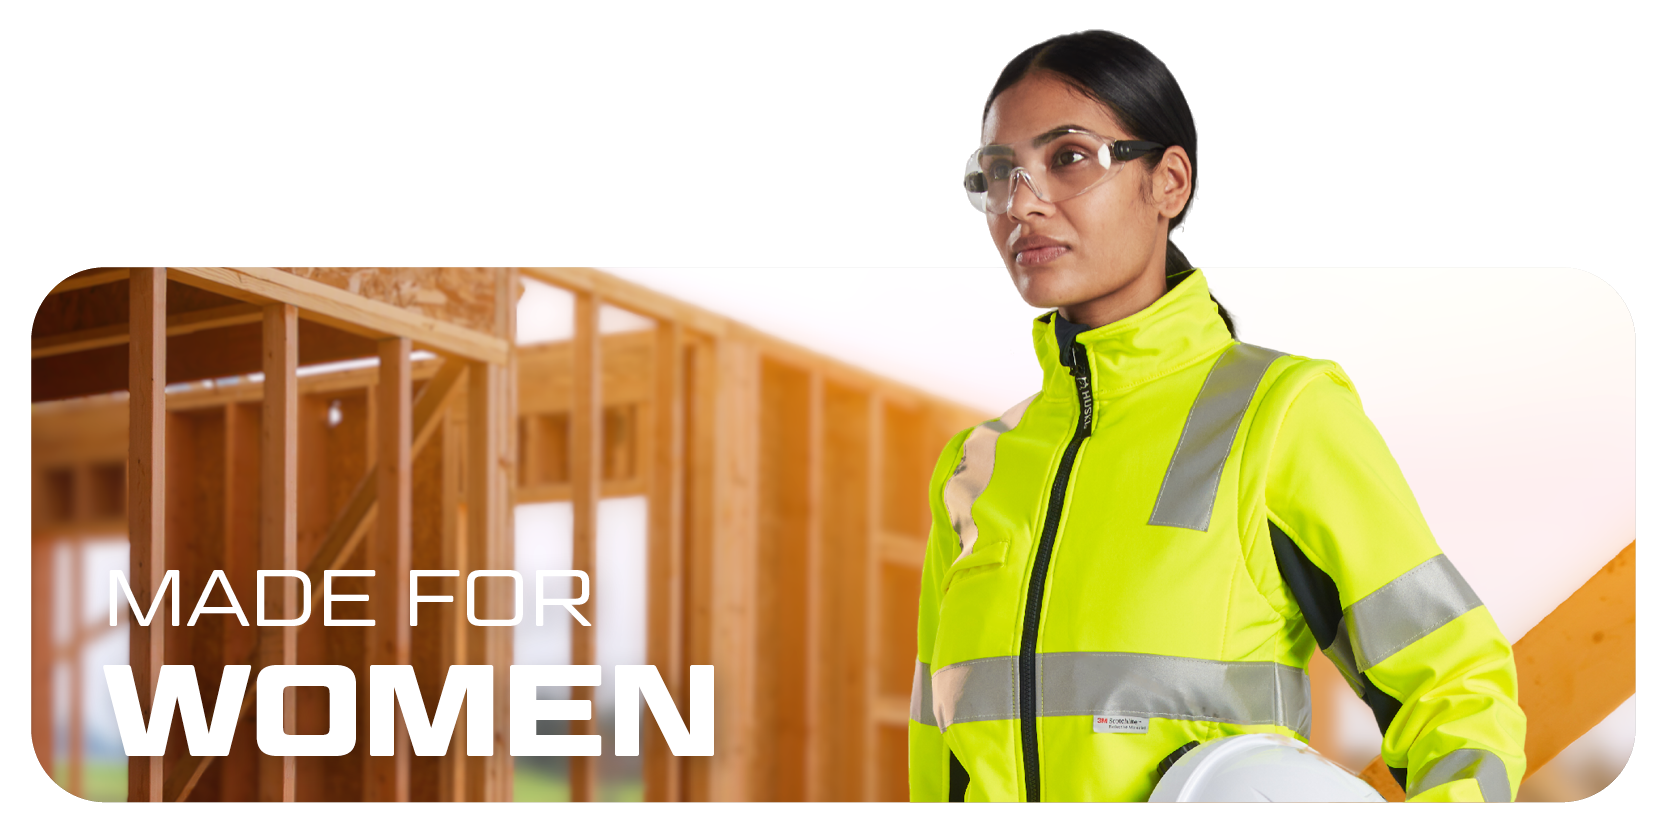 Señora con gafas, casco y ropa de advertencia, al fondo paredes de madera en construcción de postes y vigas.